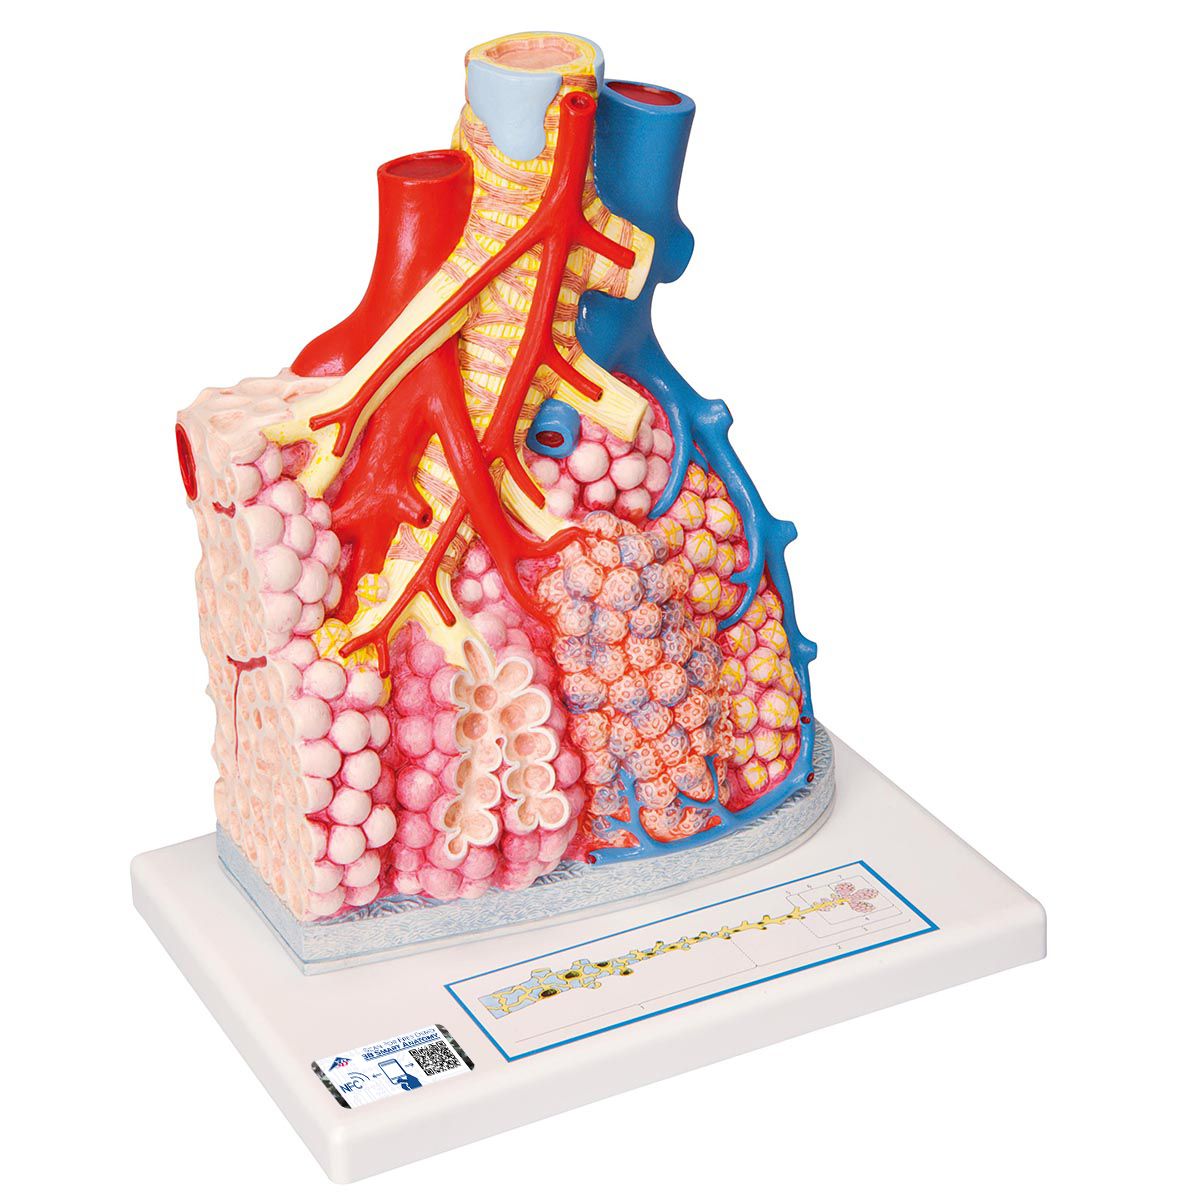 Lungenläppchen Modell mit umgebenden Blutgefäßen - 3B Smart Anatomy, Bestellnummer 1008493, G60, 3B Scientific